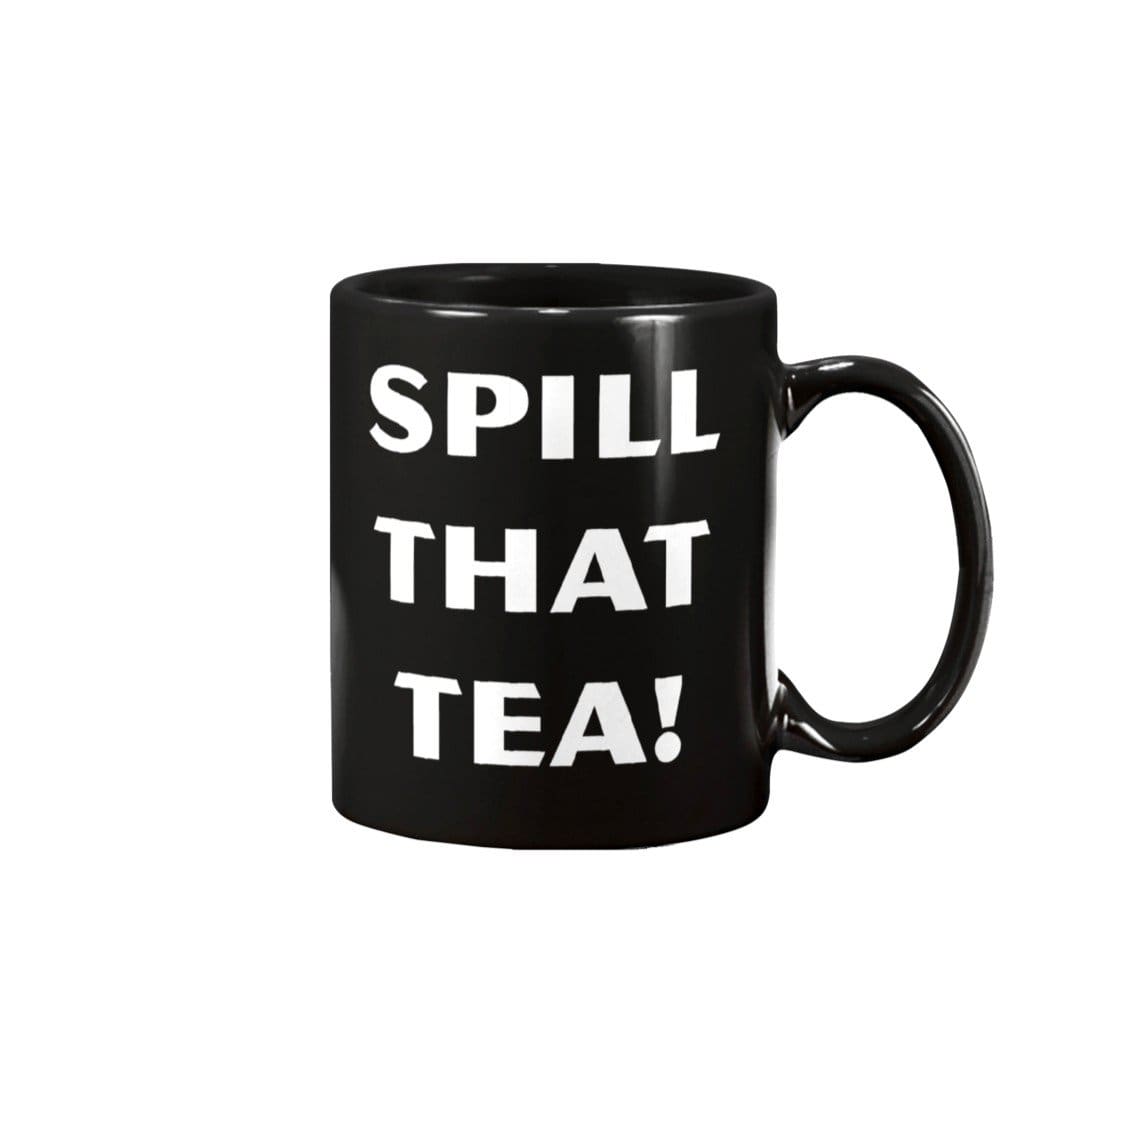 Spill That Tea! 15oz Coffee Mug - Black / 15OZ - Mugs